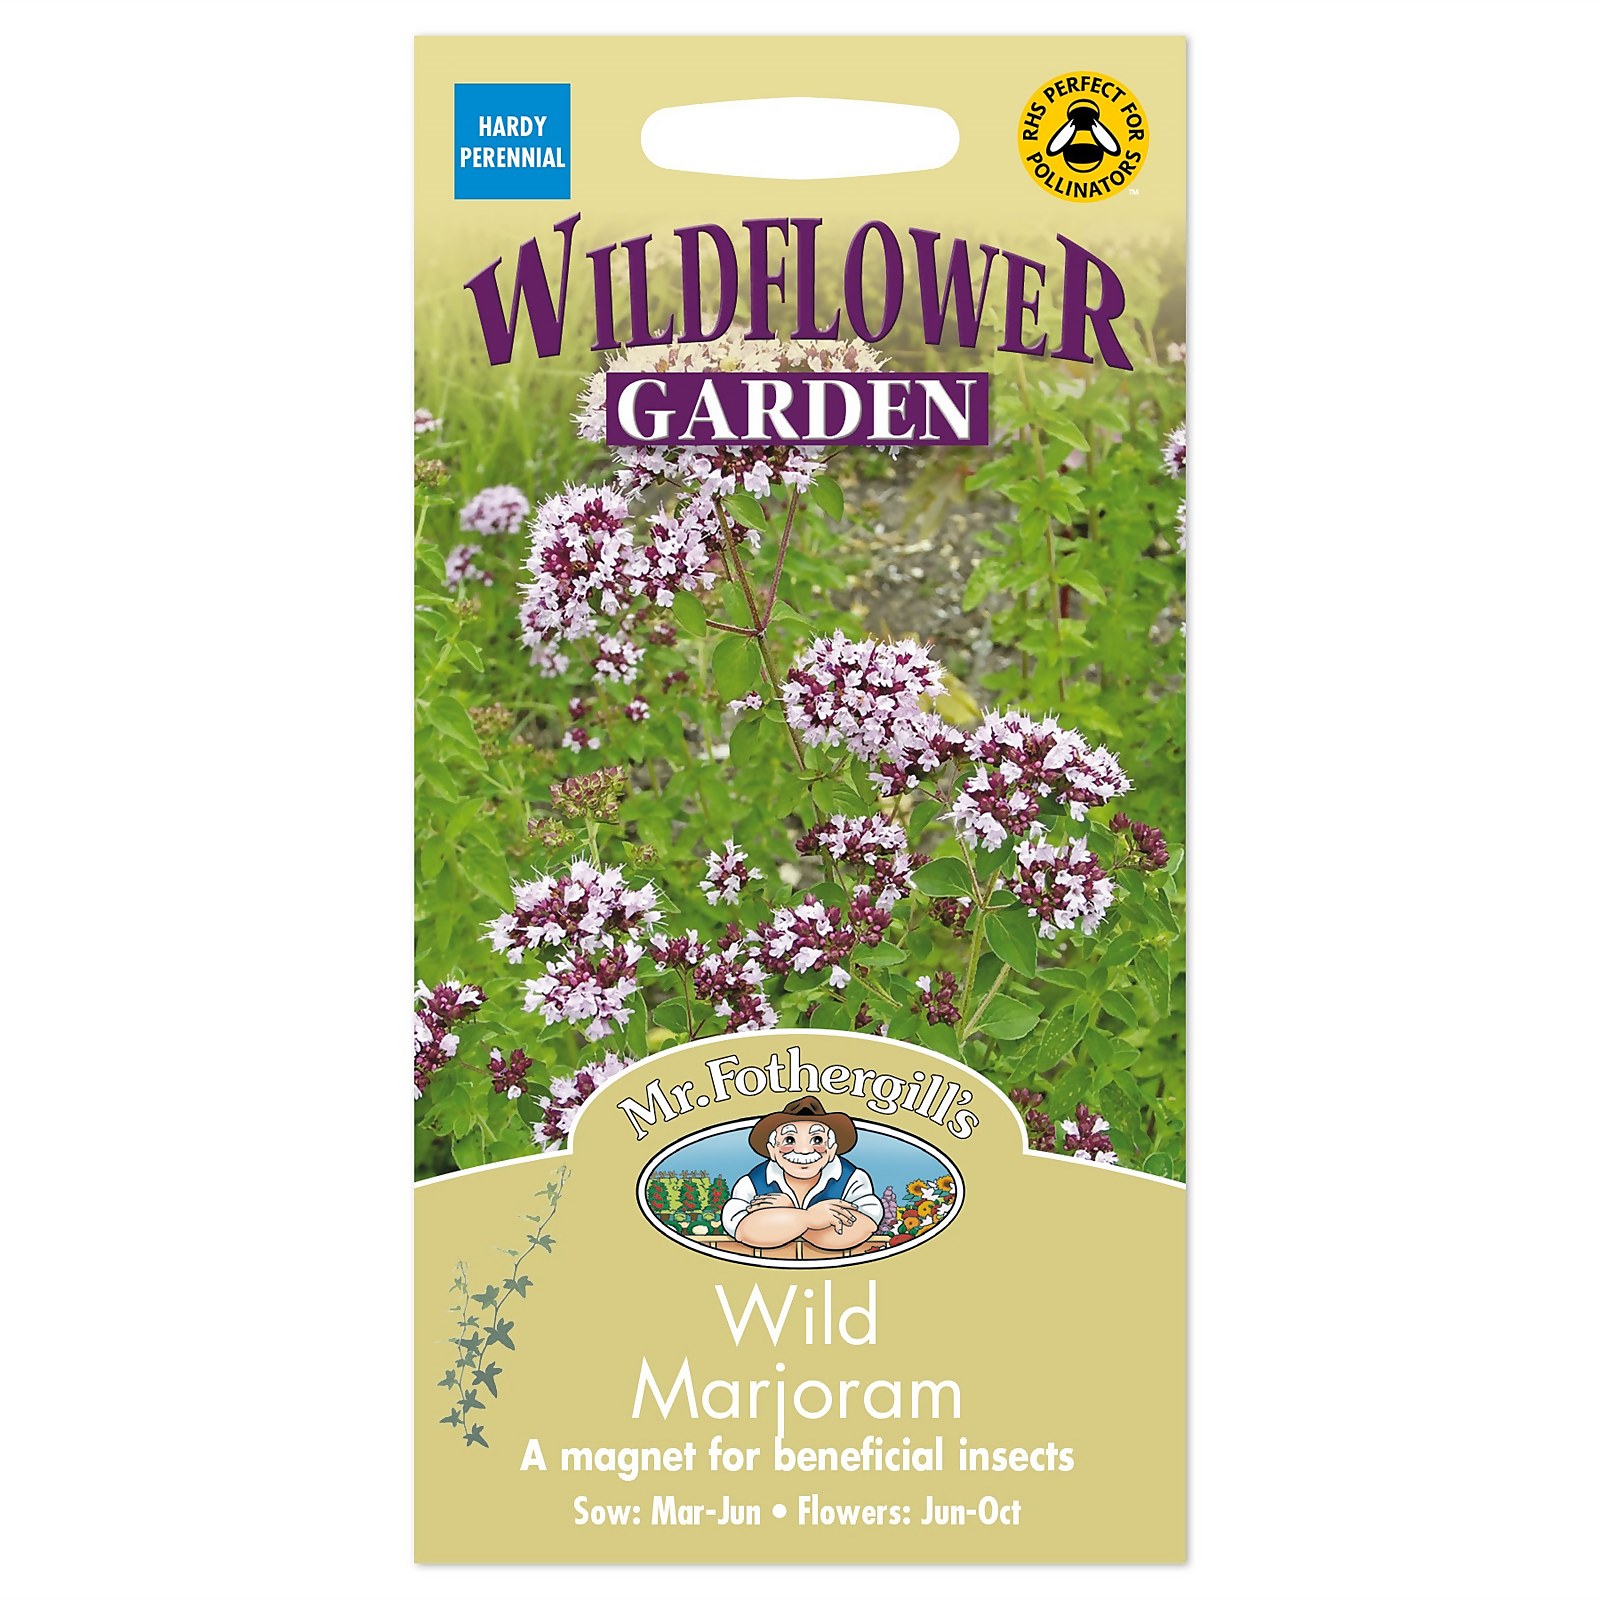 Mr. Fothergill's Wildflower Wild Marjoram Seeds